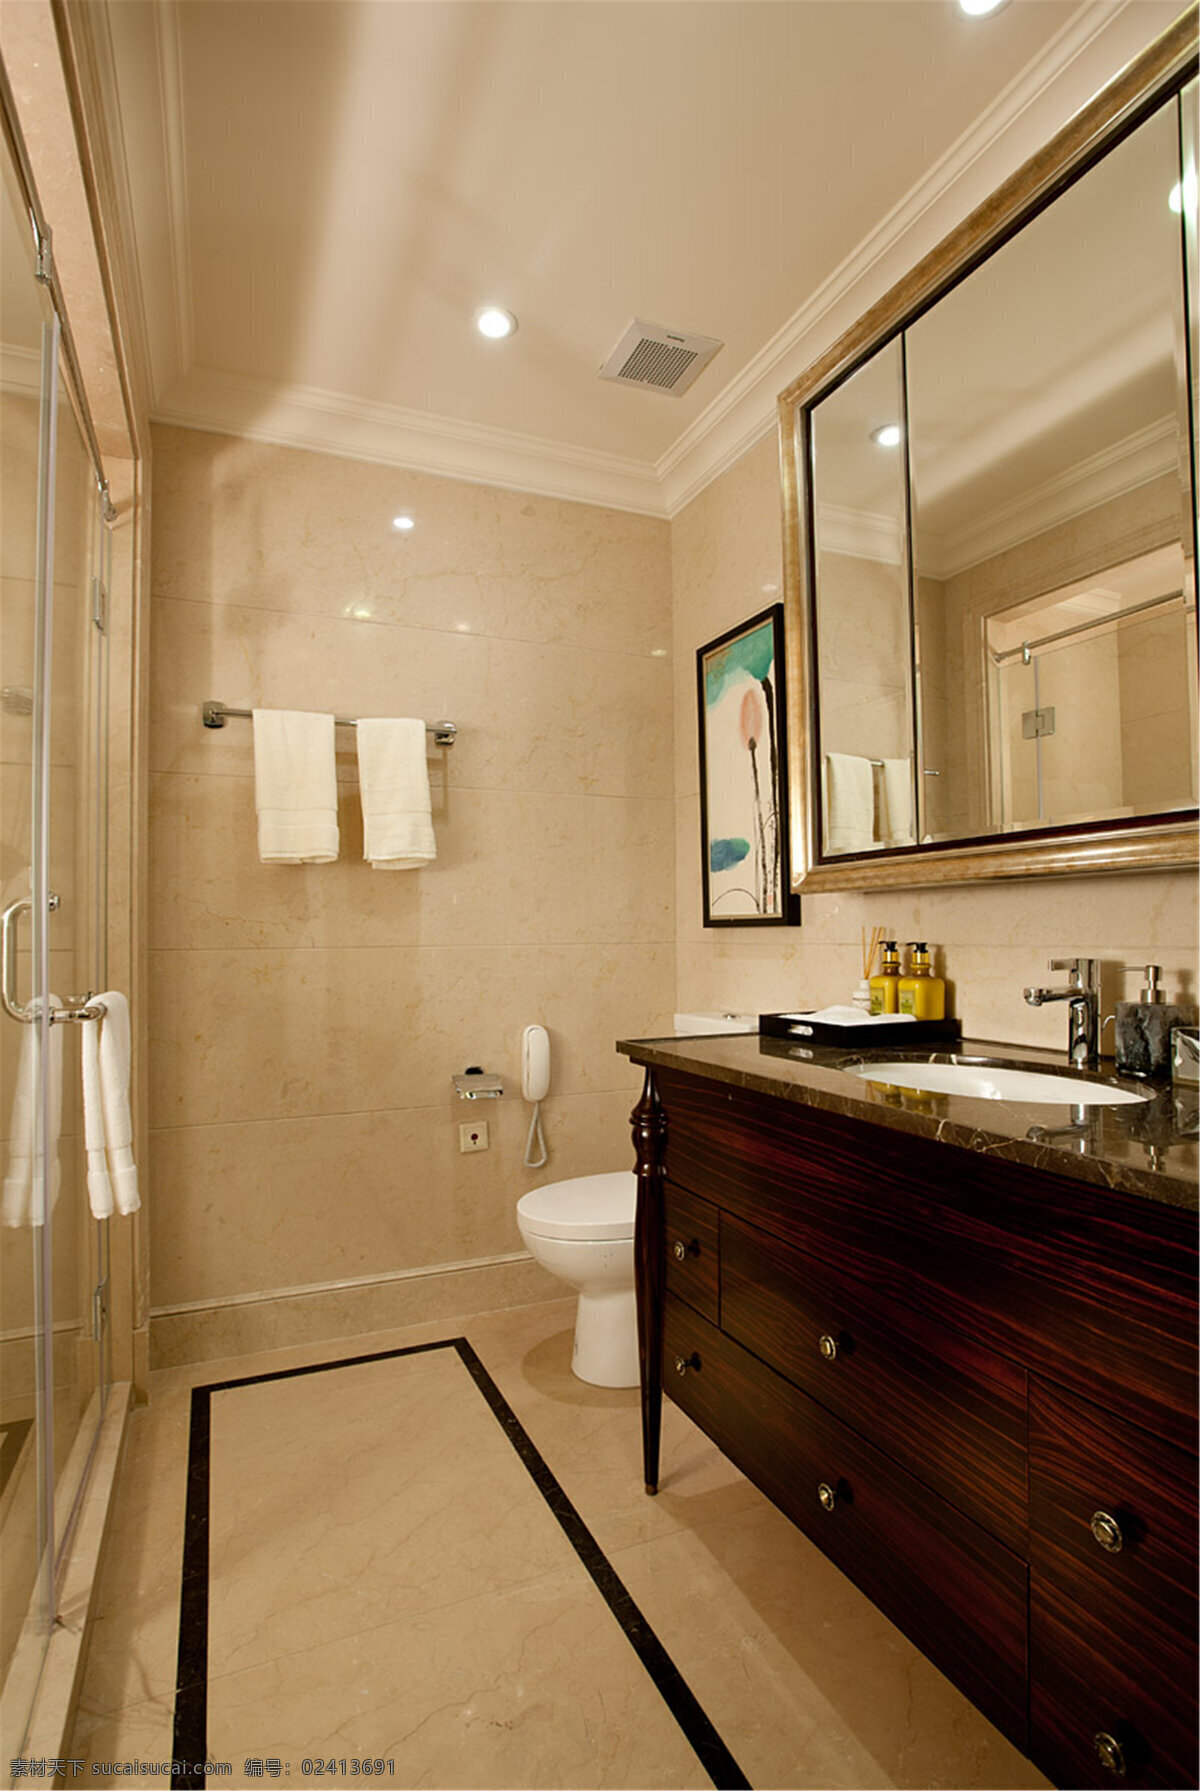 美式 简约 卫生间 洗手台 设计图 家居 家居生活 室内设计 装修 室内 家具 装修设计 环境设计